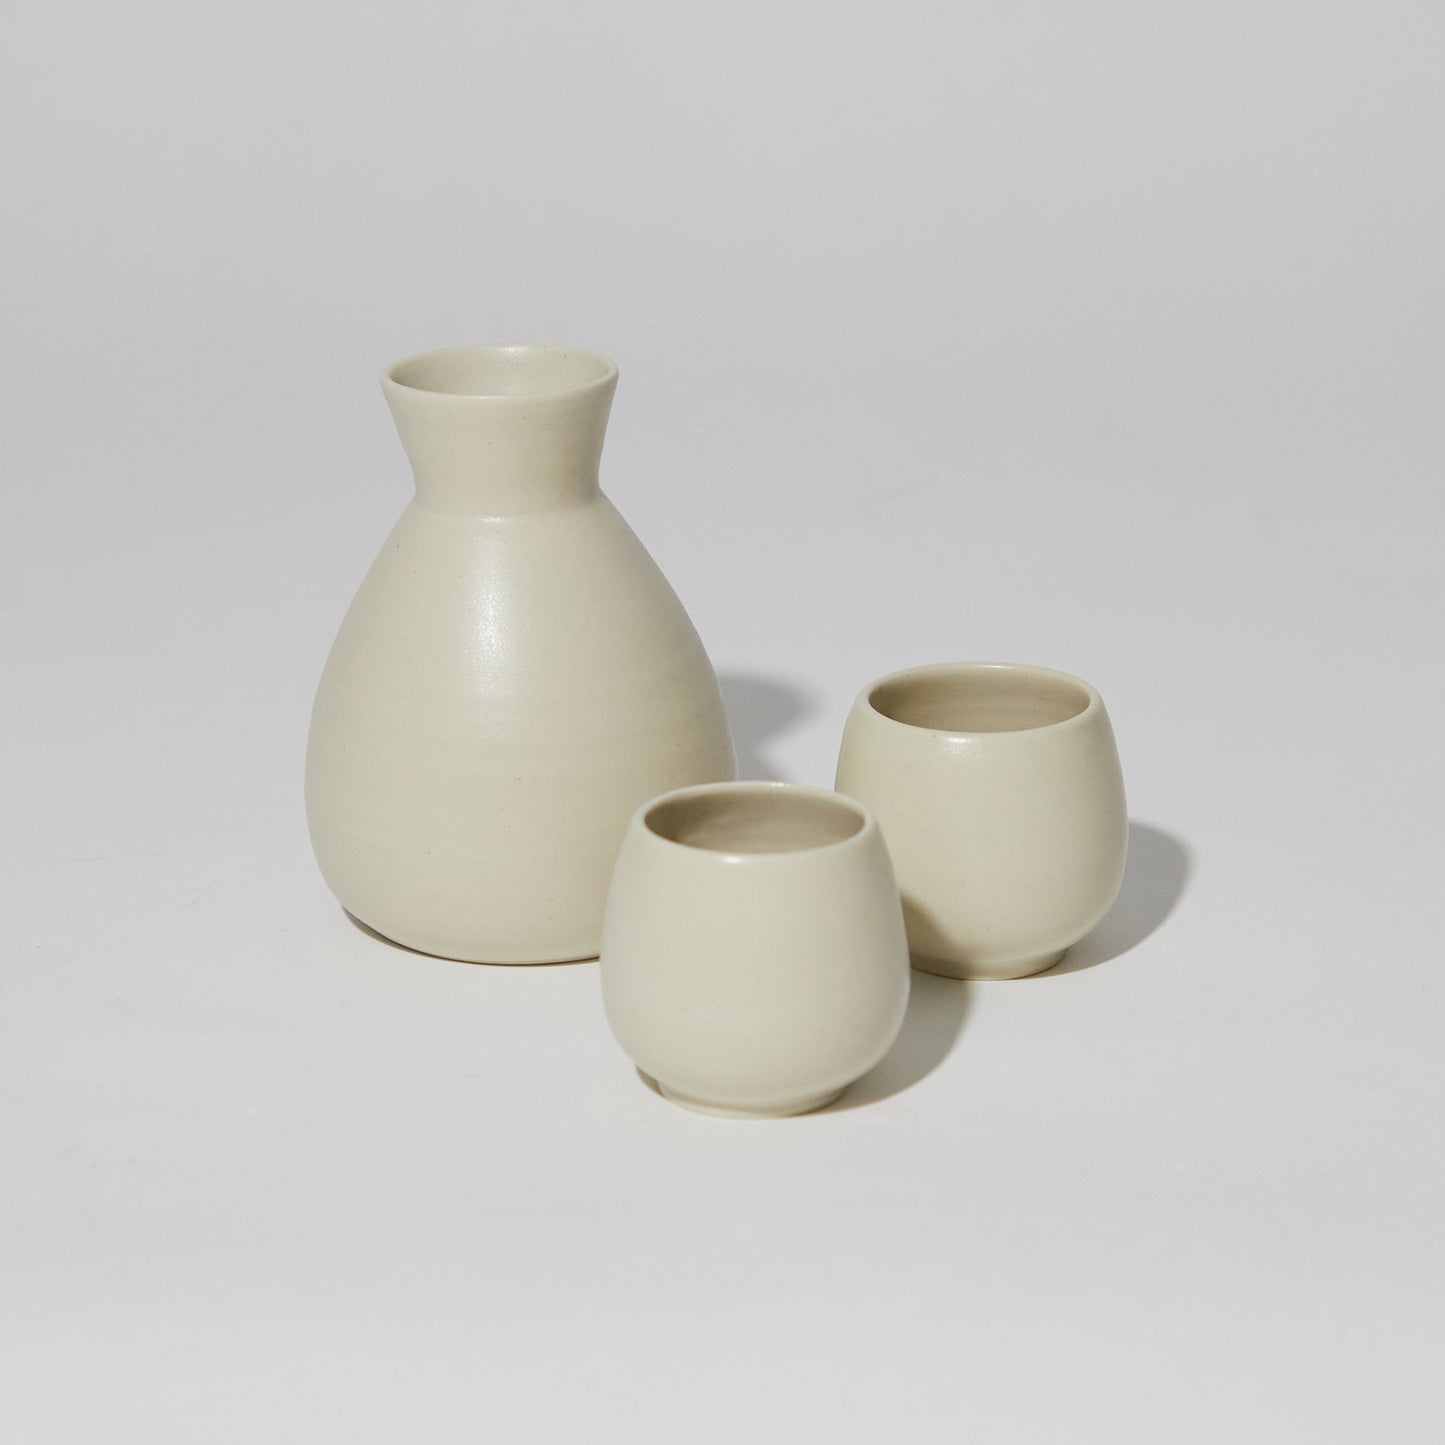 Sake Cups (Round)